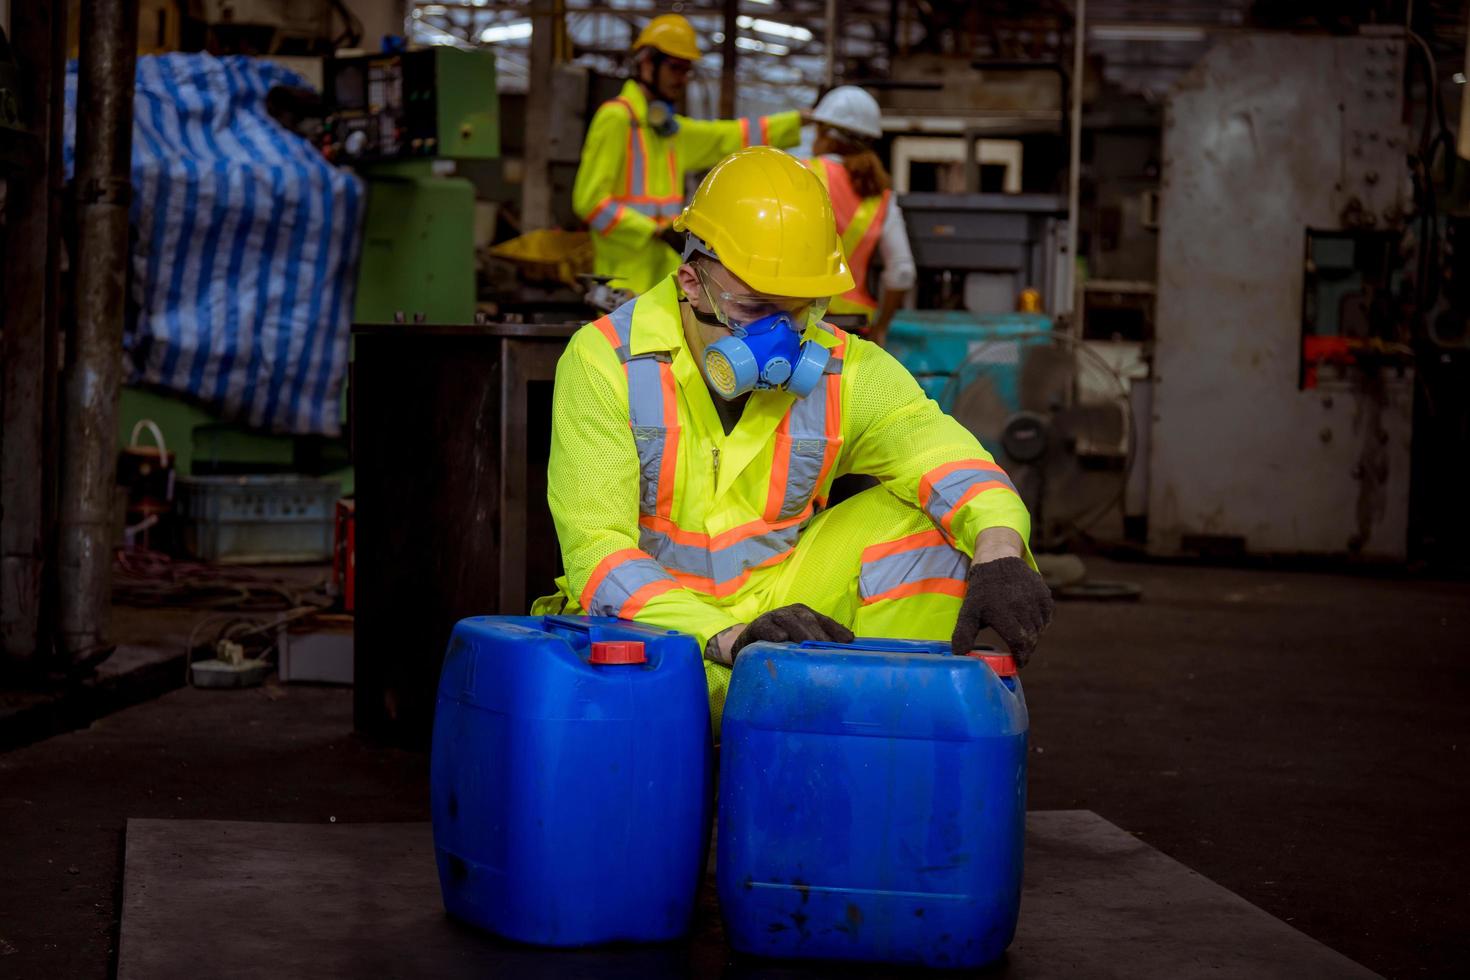 la industria del ingeniero con uniforme de seguridad, guantes negros, máscara de gas se siente sofocada cuando se revisa el tanque químico en el trabajo de la fábrica de la industria. foto